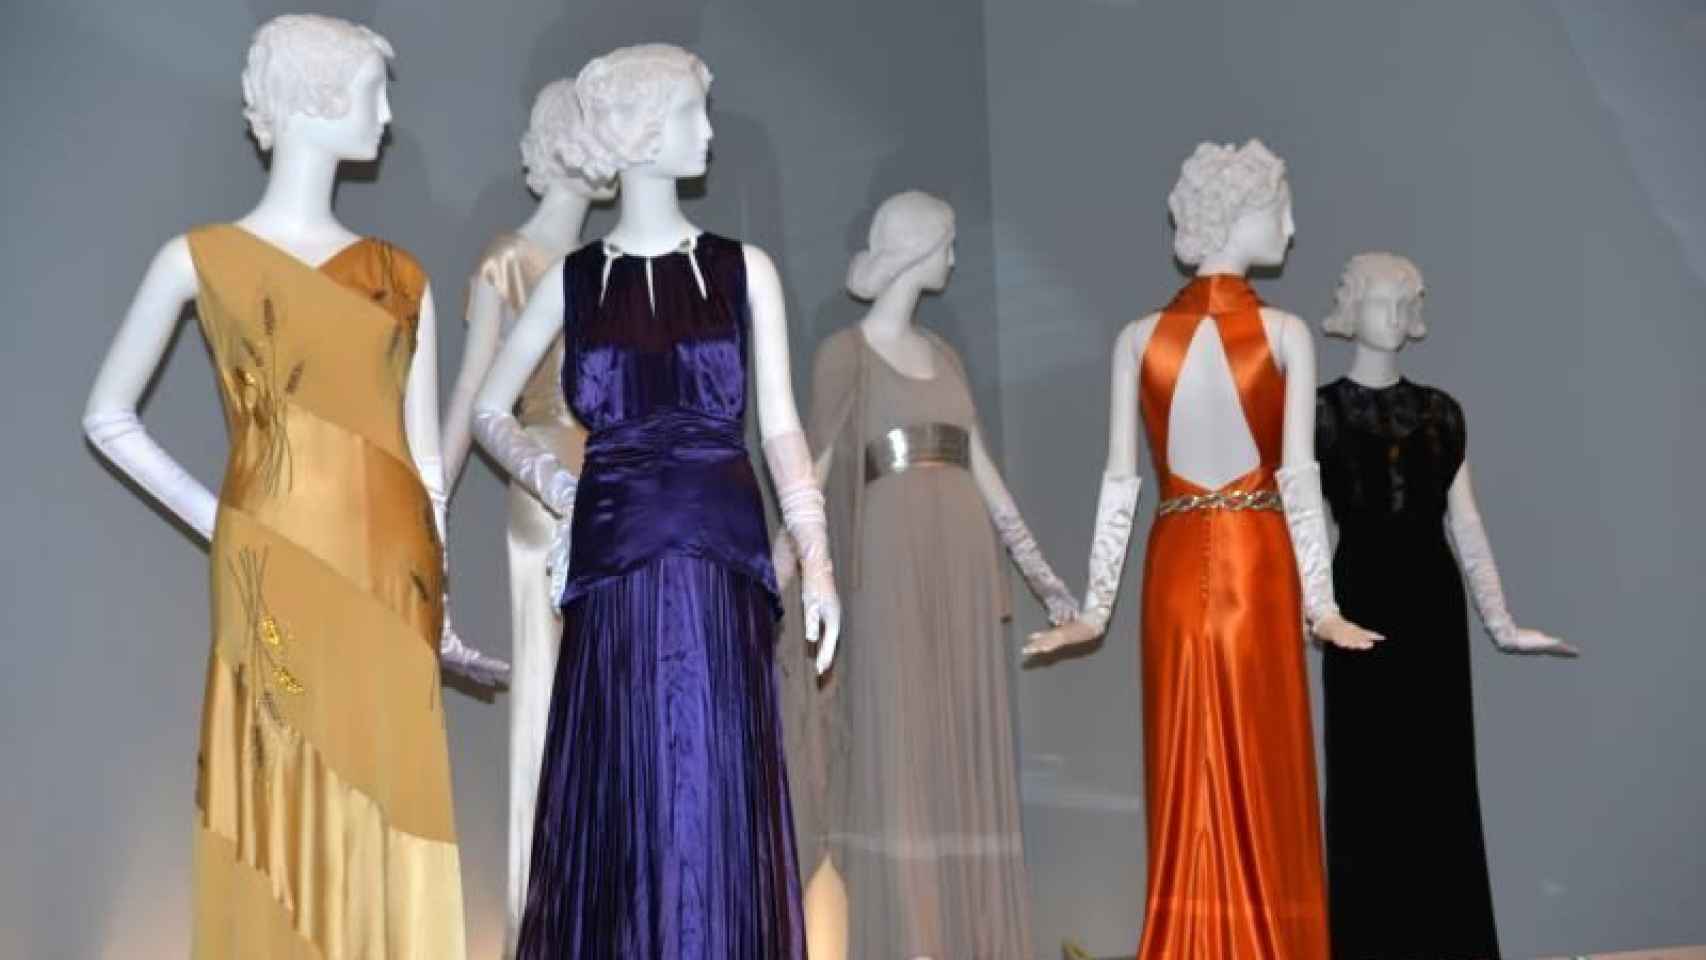 Vestidos de la moda que pasó de la pantalla de cine al uso de todos los días en las décadas de 1930 y 1940, exhibidos en la exposición Silver Screen to Mainstream en el Museo Histórico de Chicago, Illinois.